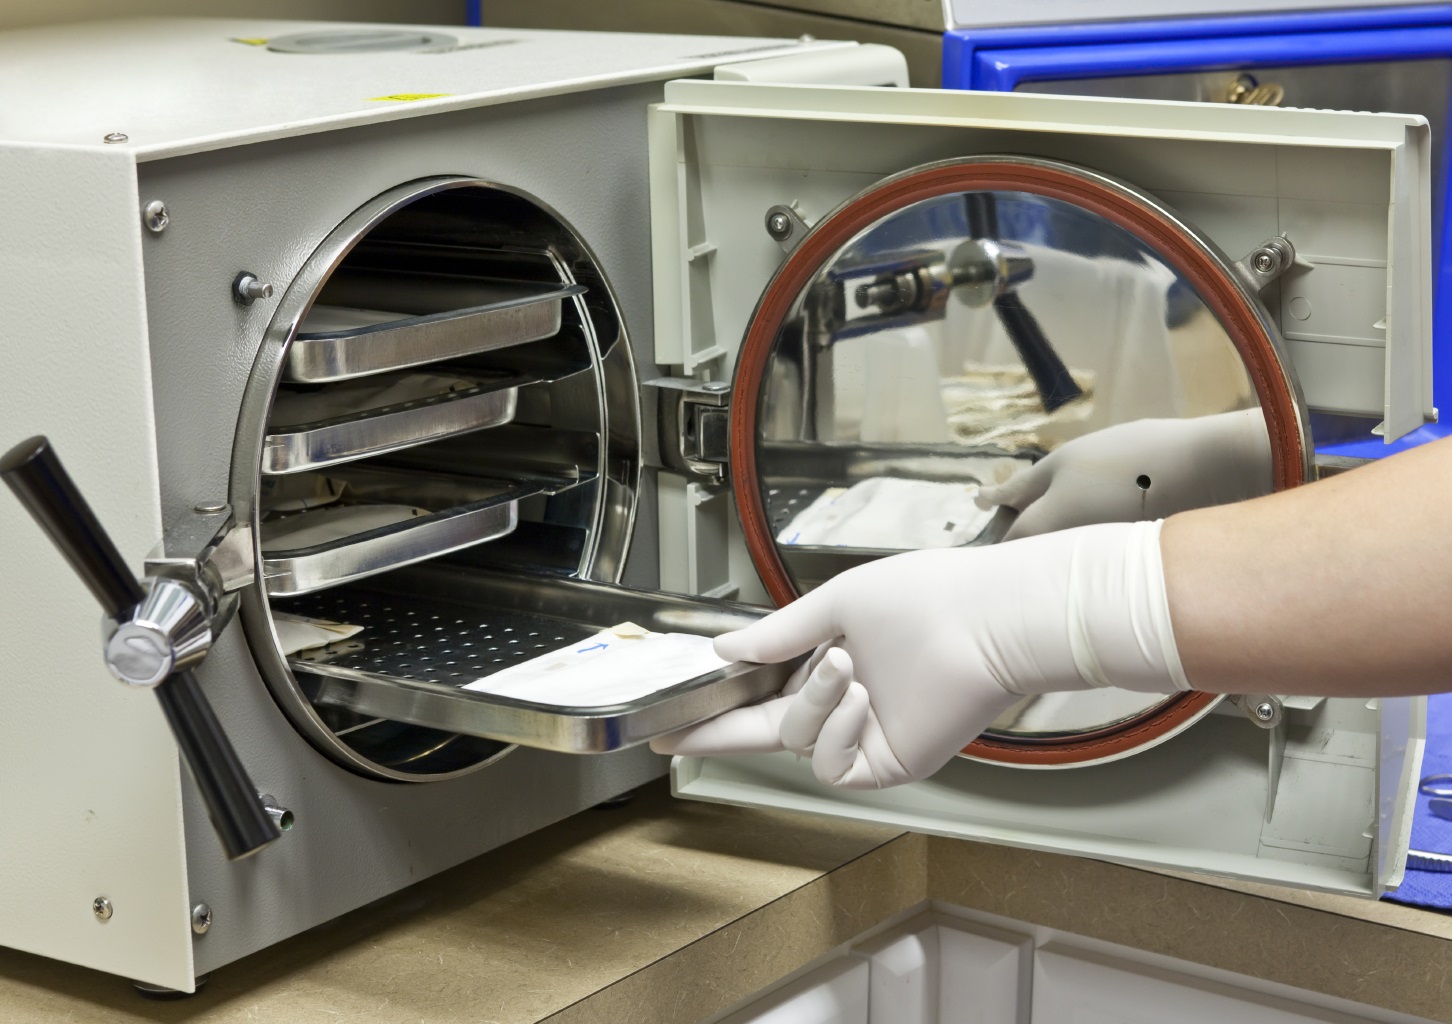 стерилизация лабораторной посуды осуществляется в сухожаровом шкафу при